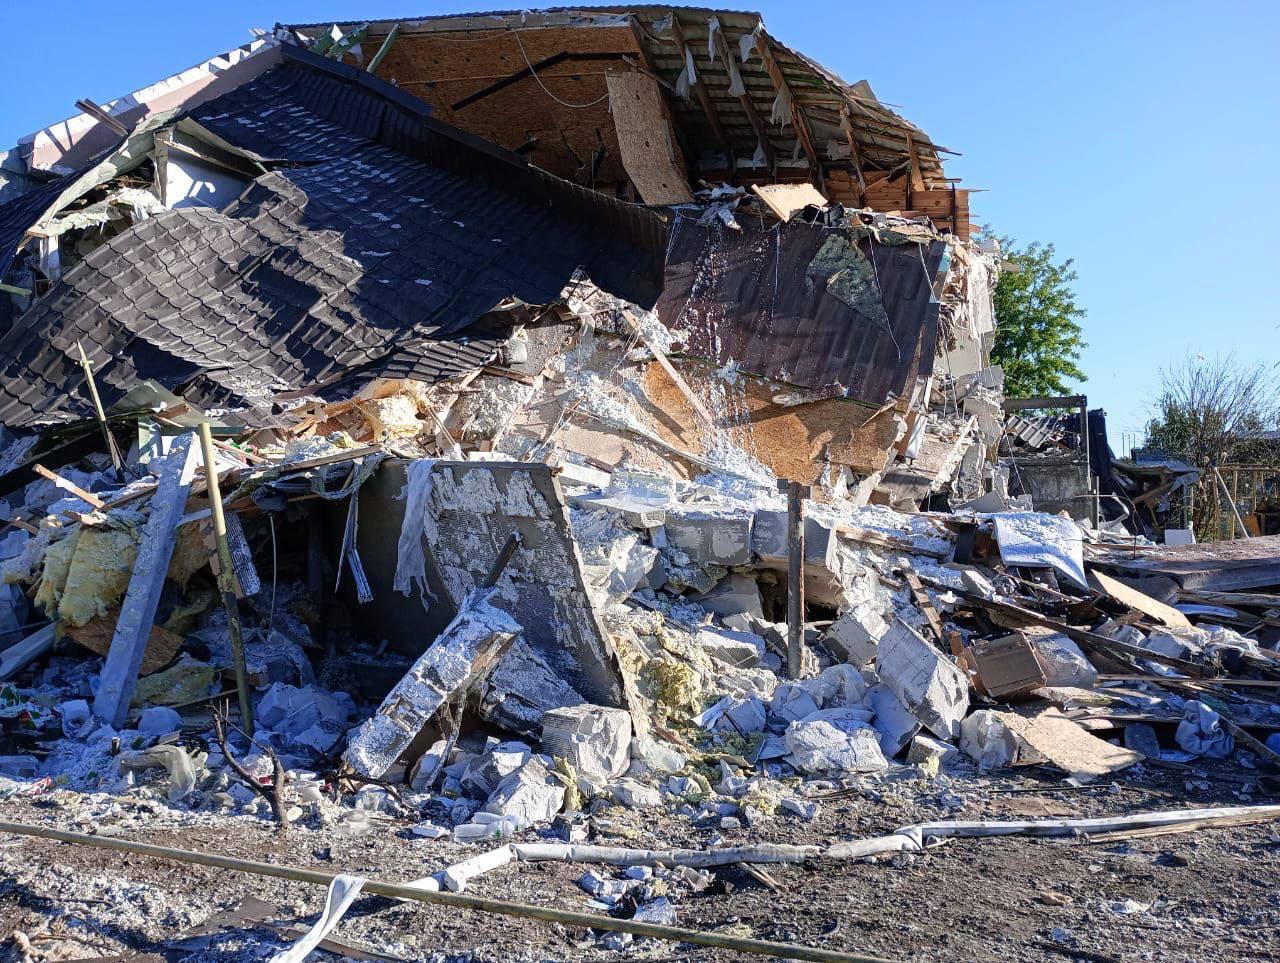 Последствия российского удара по пригороду Днепра: 22 раненых, погиб двухлетний ребенок